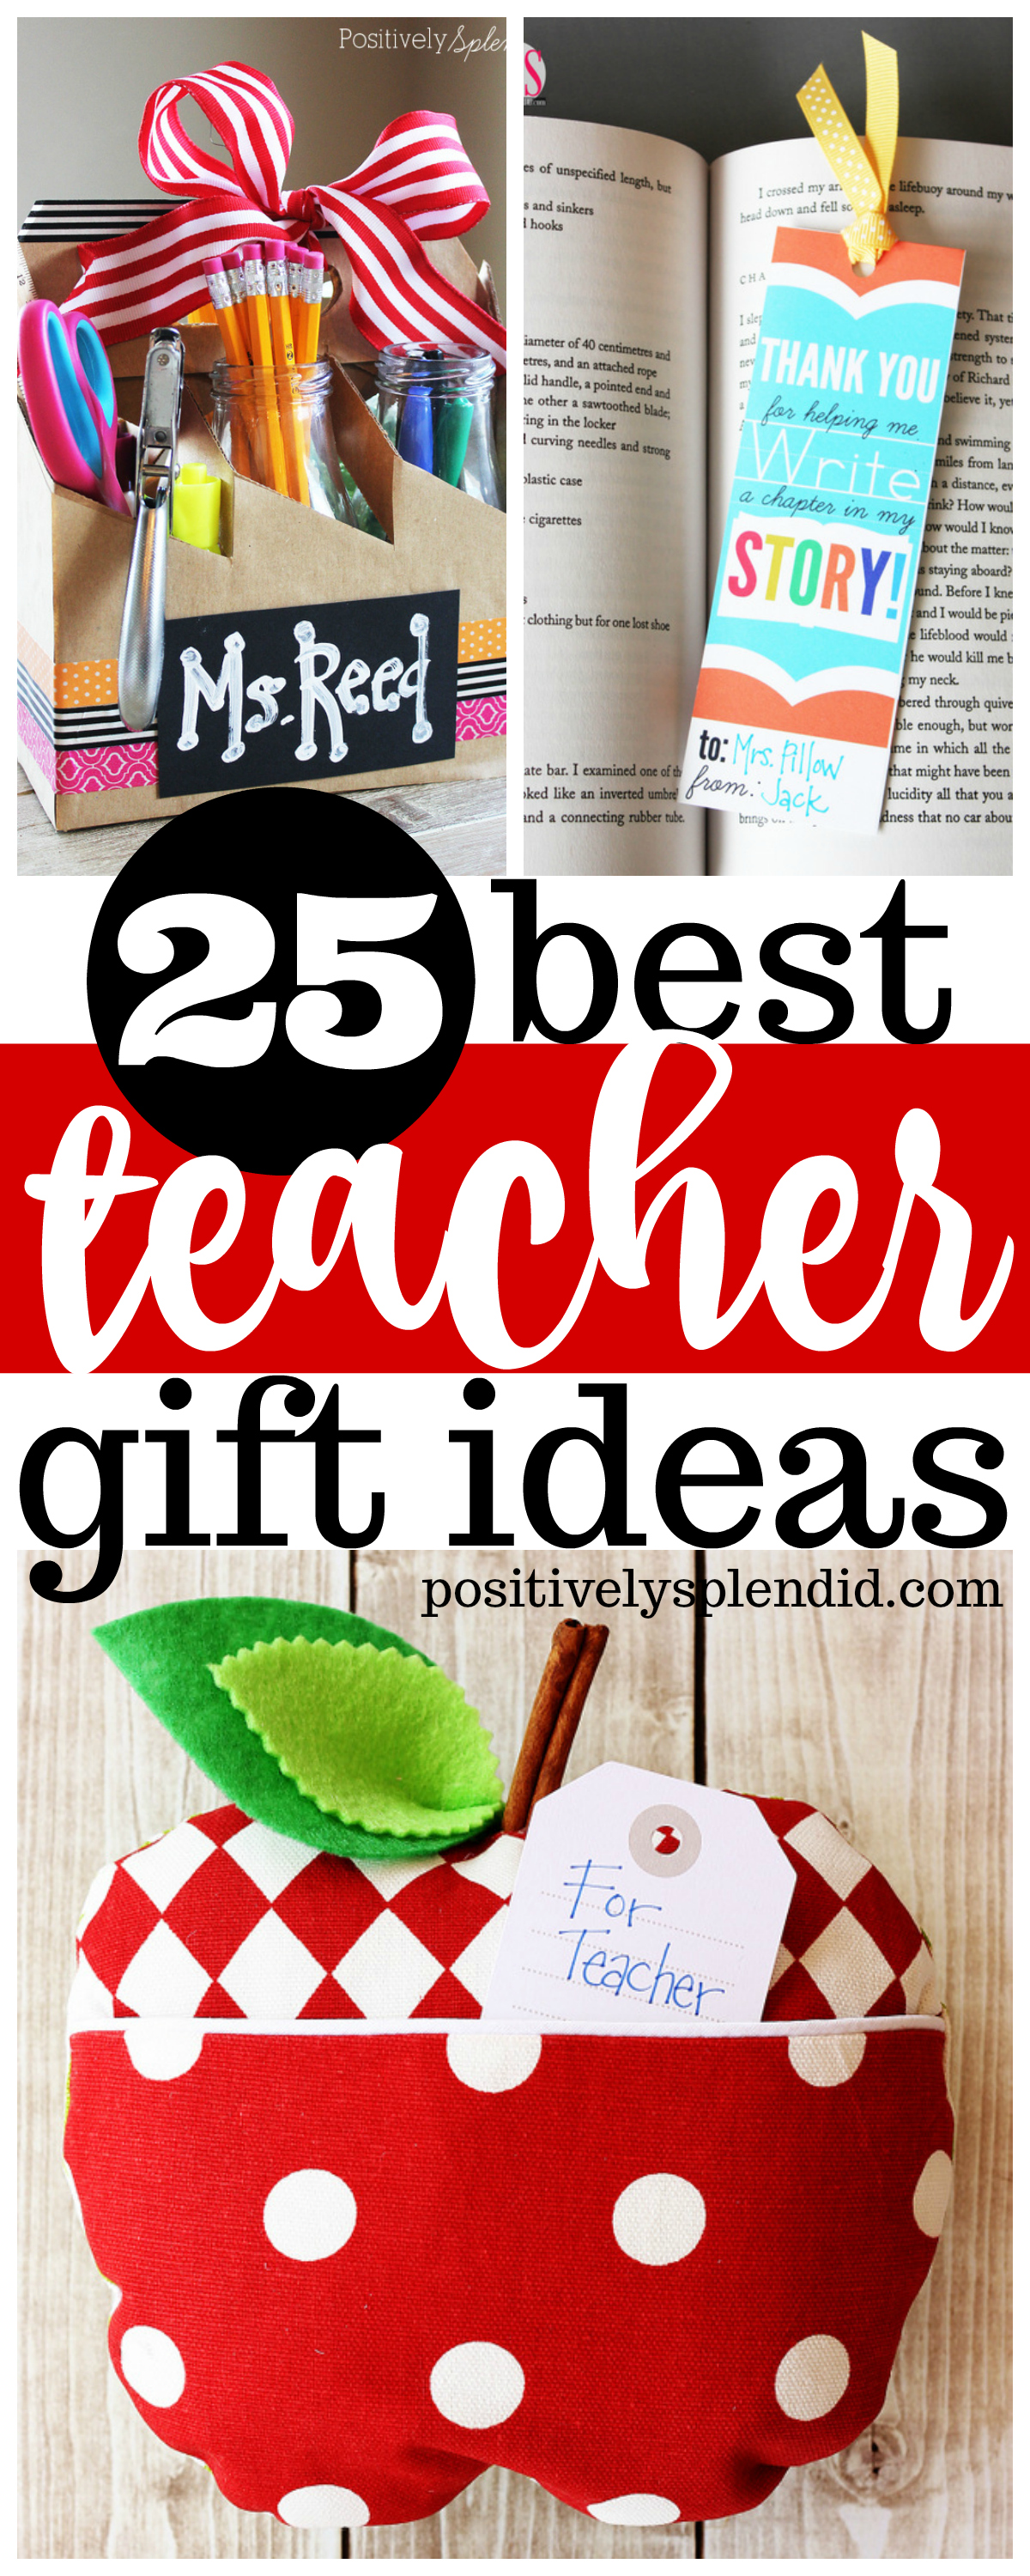 25 Best Teacher Gift Ideas | Positively Splendid | Bloglovin’